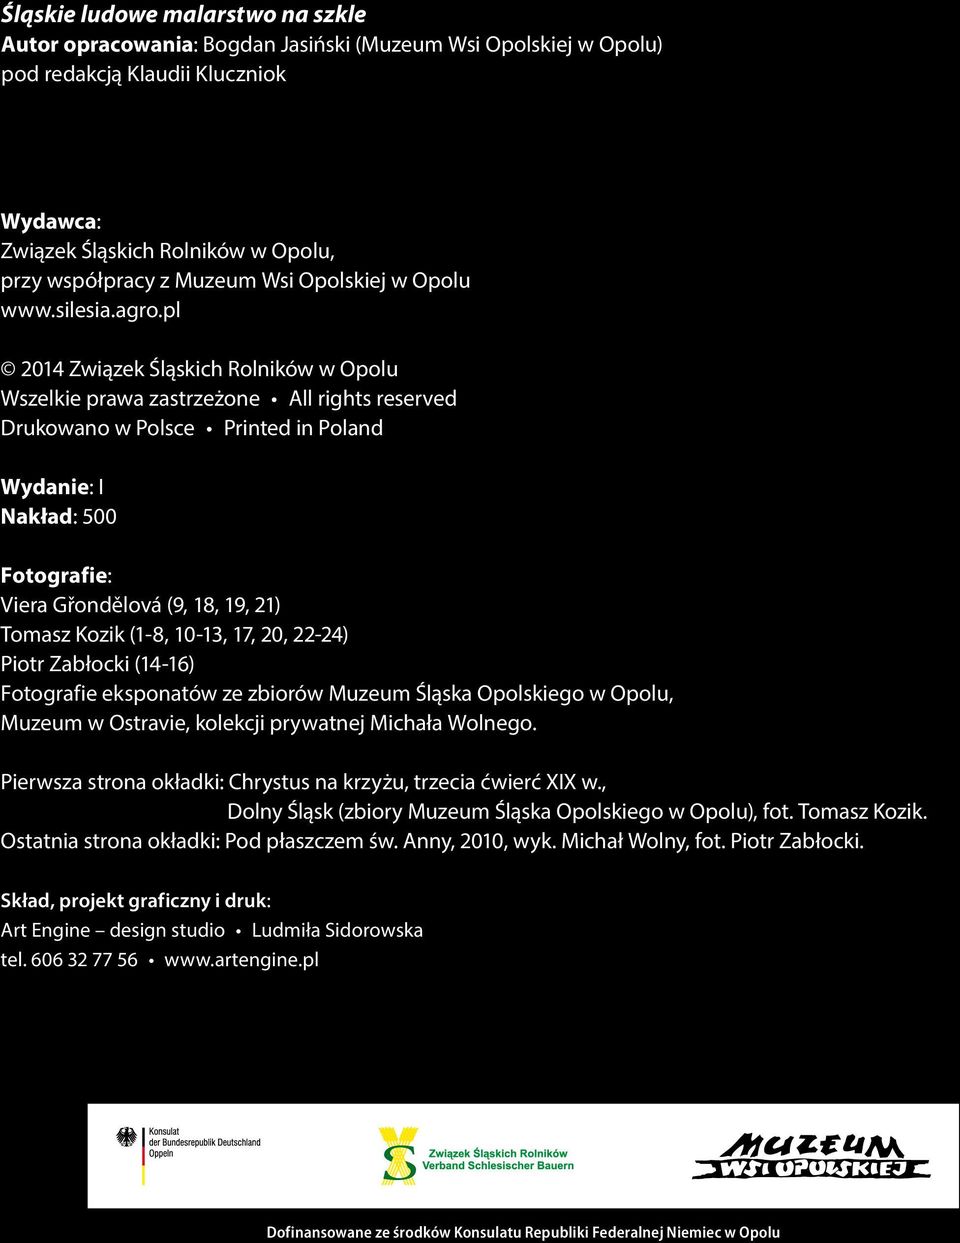 pl 2014 Związek Śląskich Rolników w Opolu Wszelkie prawa zastrzeżone All rights reserved Drukowano w Polsce Printed in Poland Wydanie: I Nakład: 500 Fotografie: Viera Gřondělová (9, 18, 19, 21)